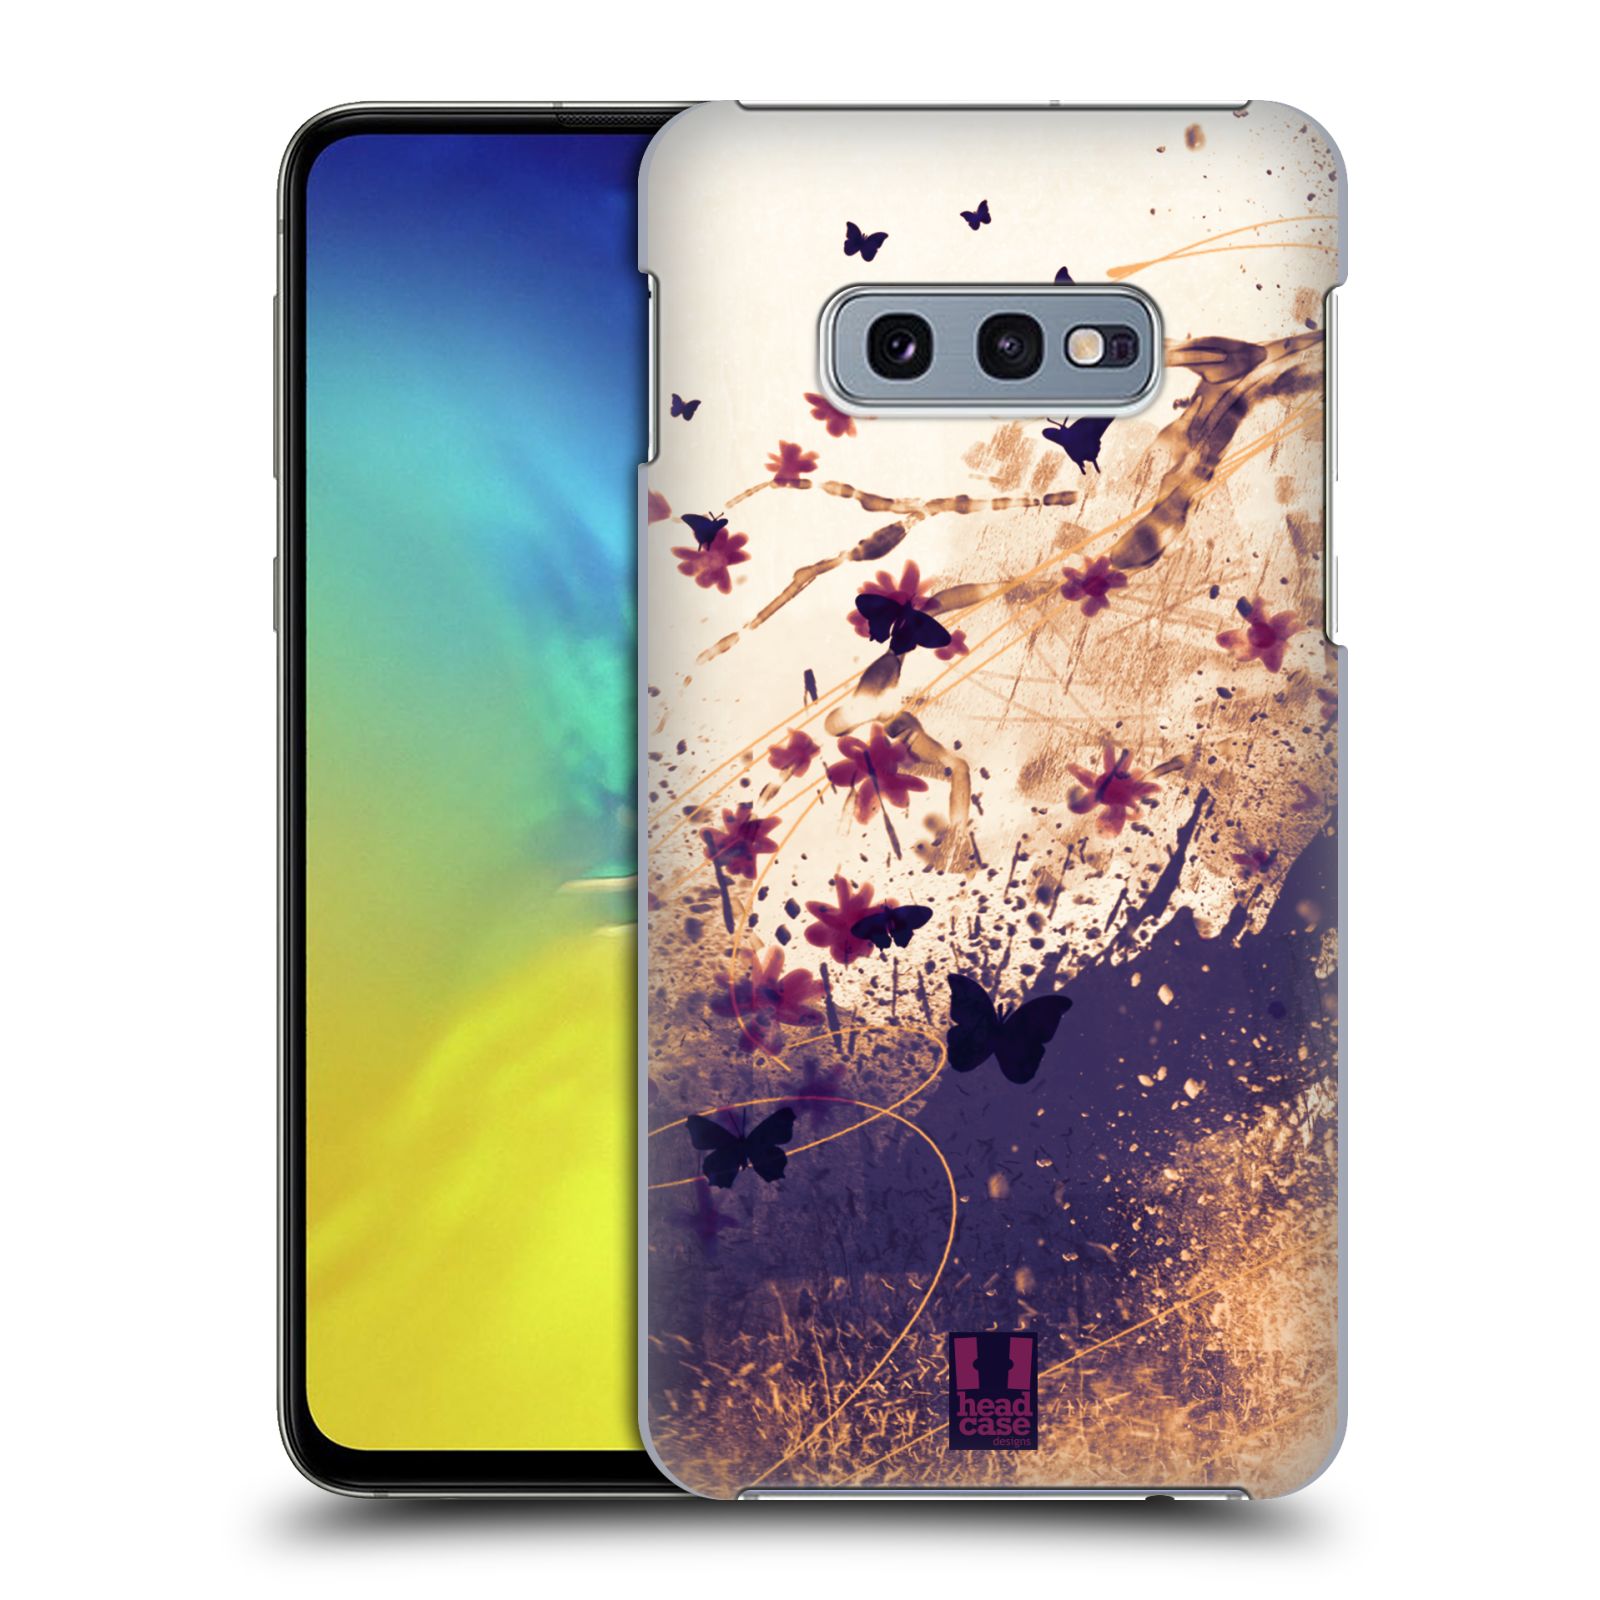 Pouzdro na mobil Samsung Galaxy S10e - HEAD CASE - vzor Kreslené barevné květiny KVĚTY A MOTÝLCI